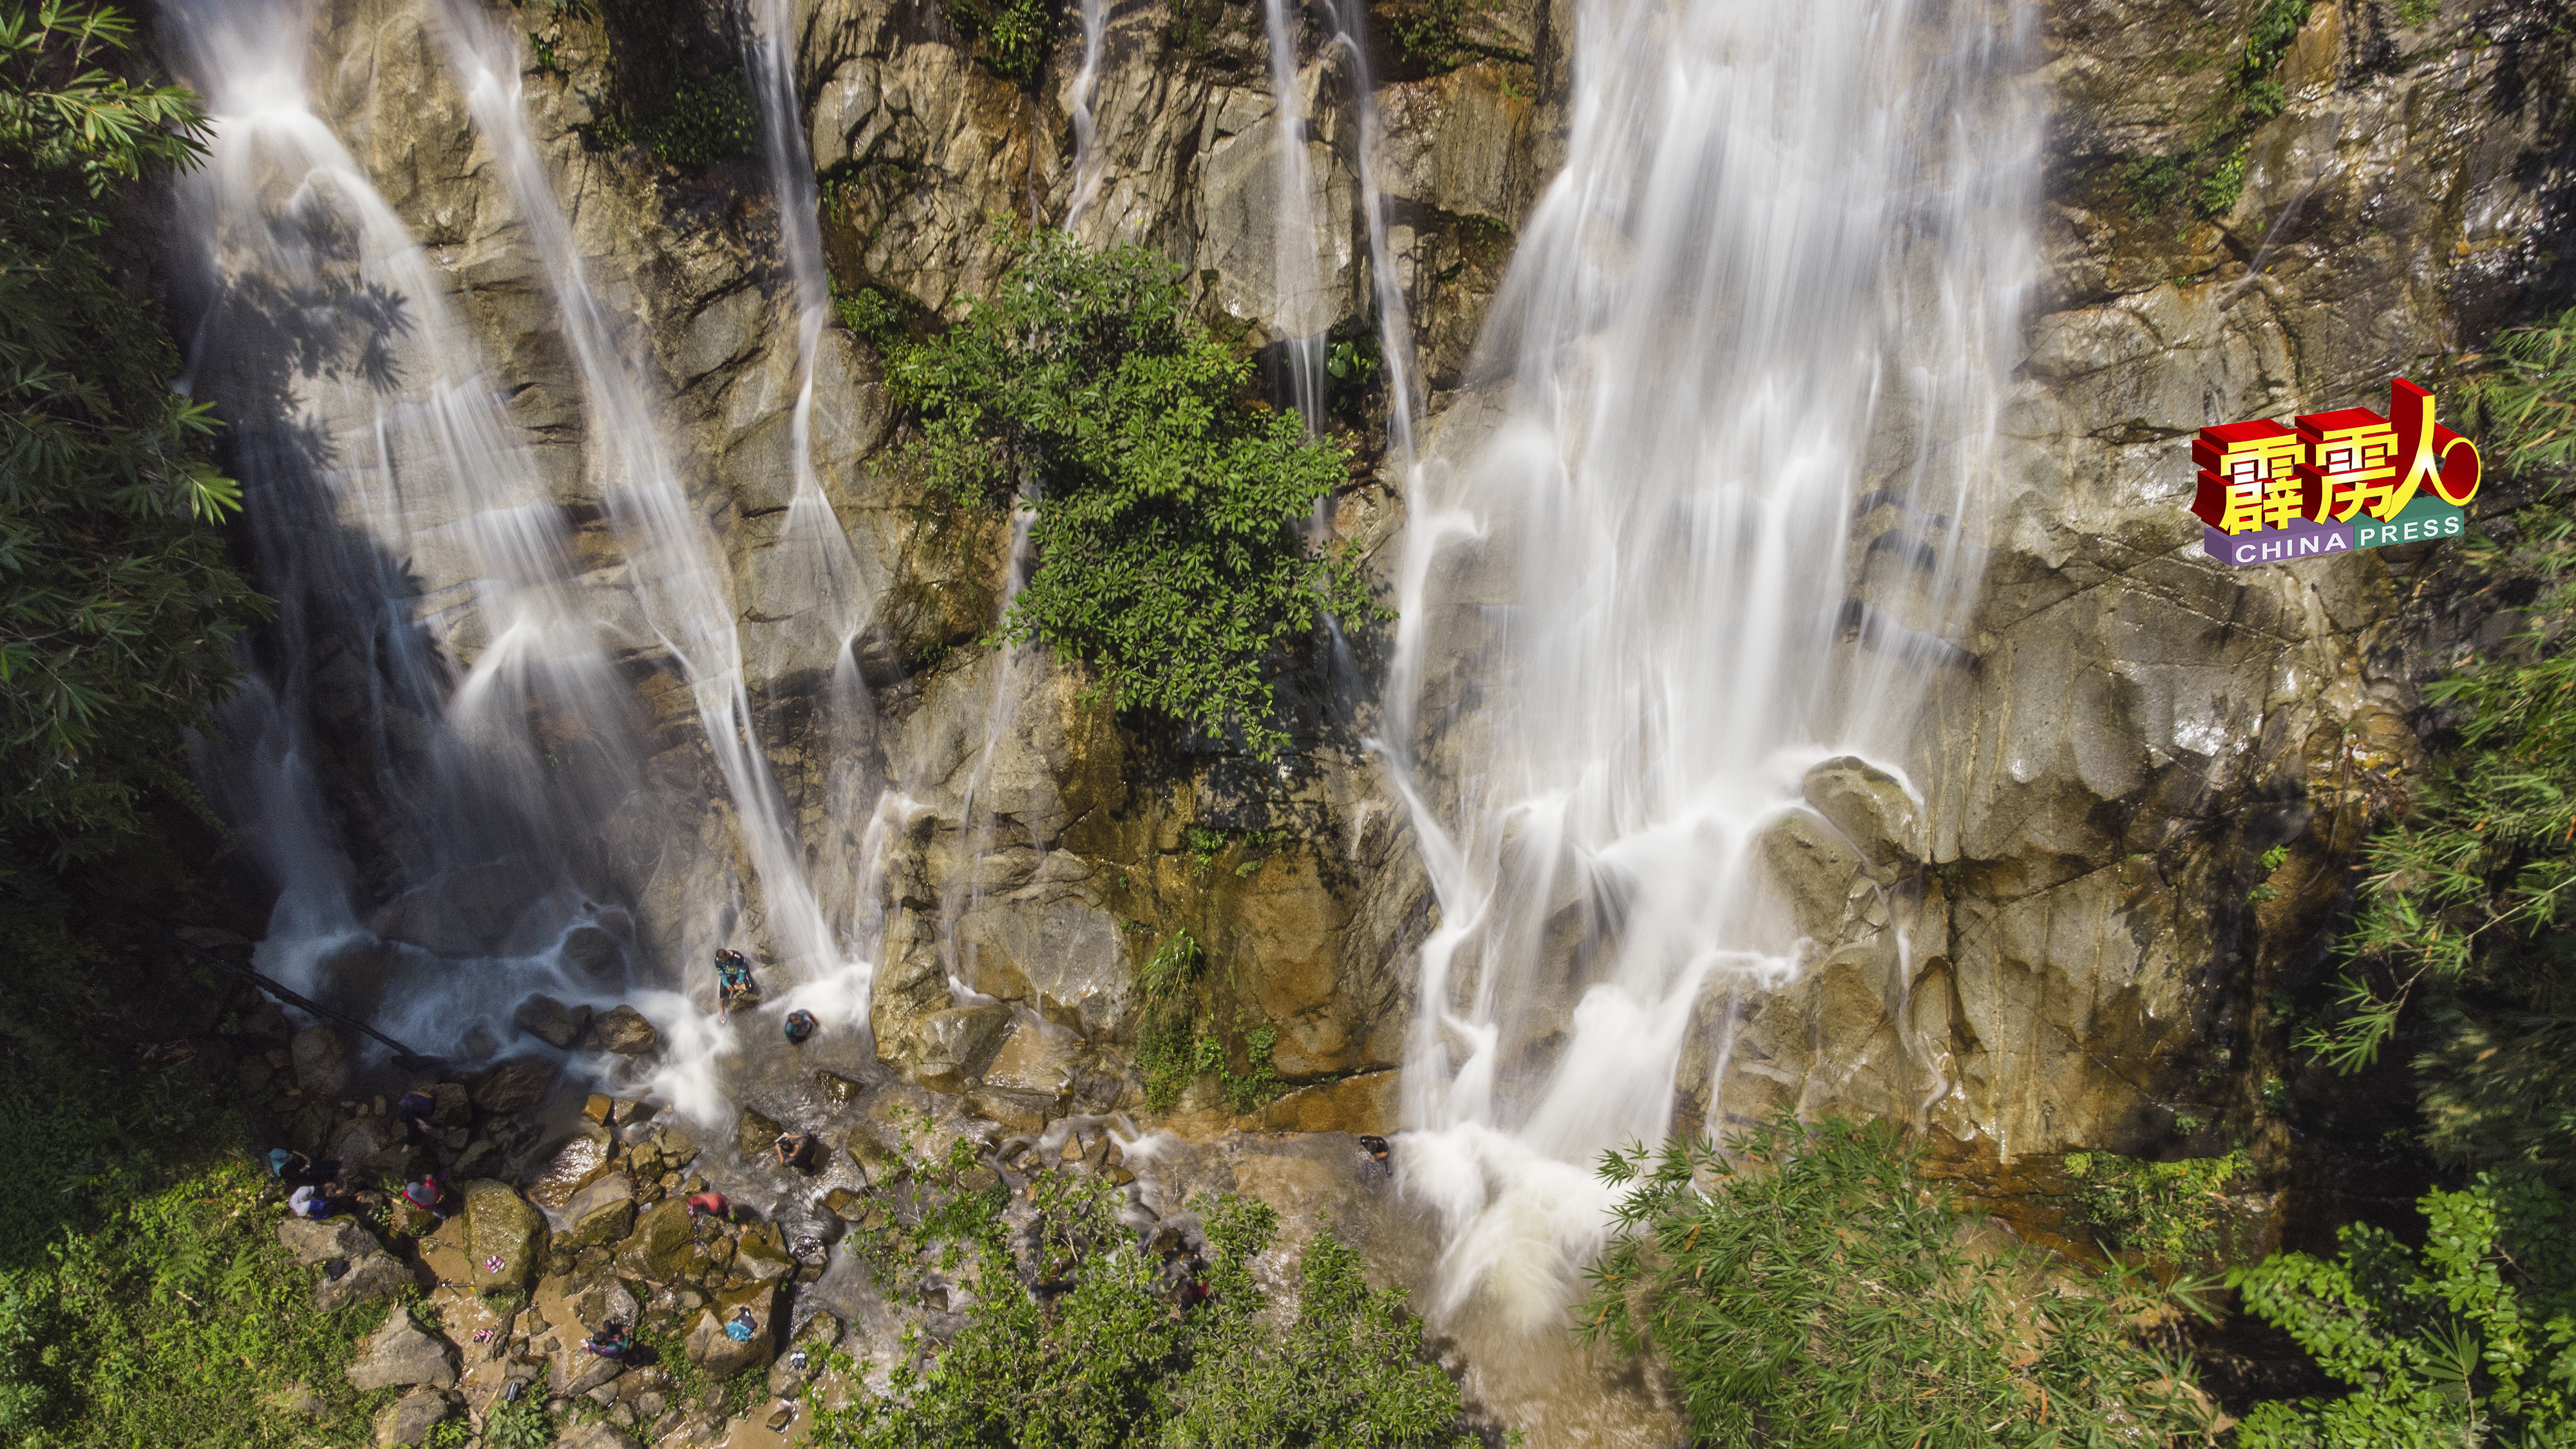 位于和丰的波斯拥原住民区的甘榜本迪内，隐藏着一个景色优美的本逸瀑布。